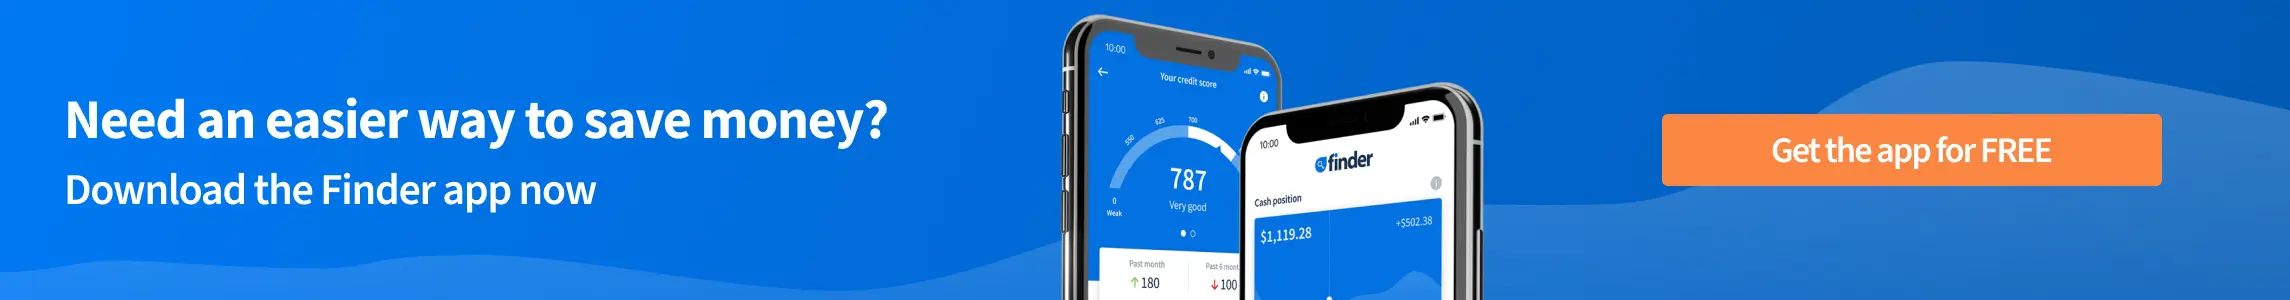 finder app banner saving money